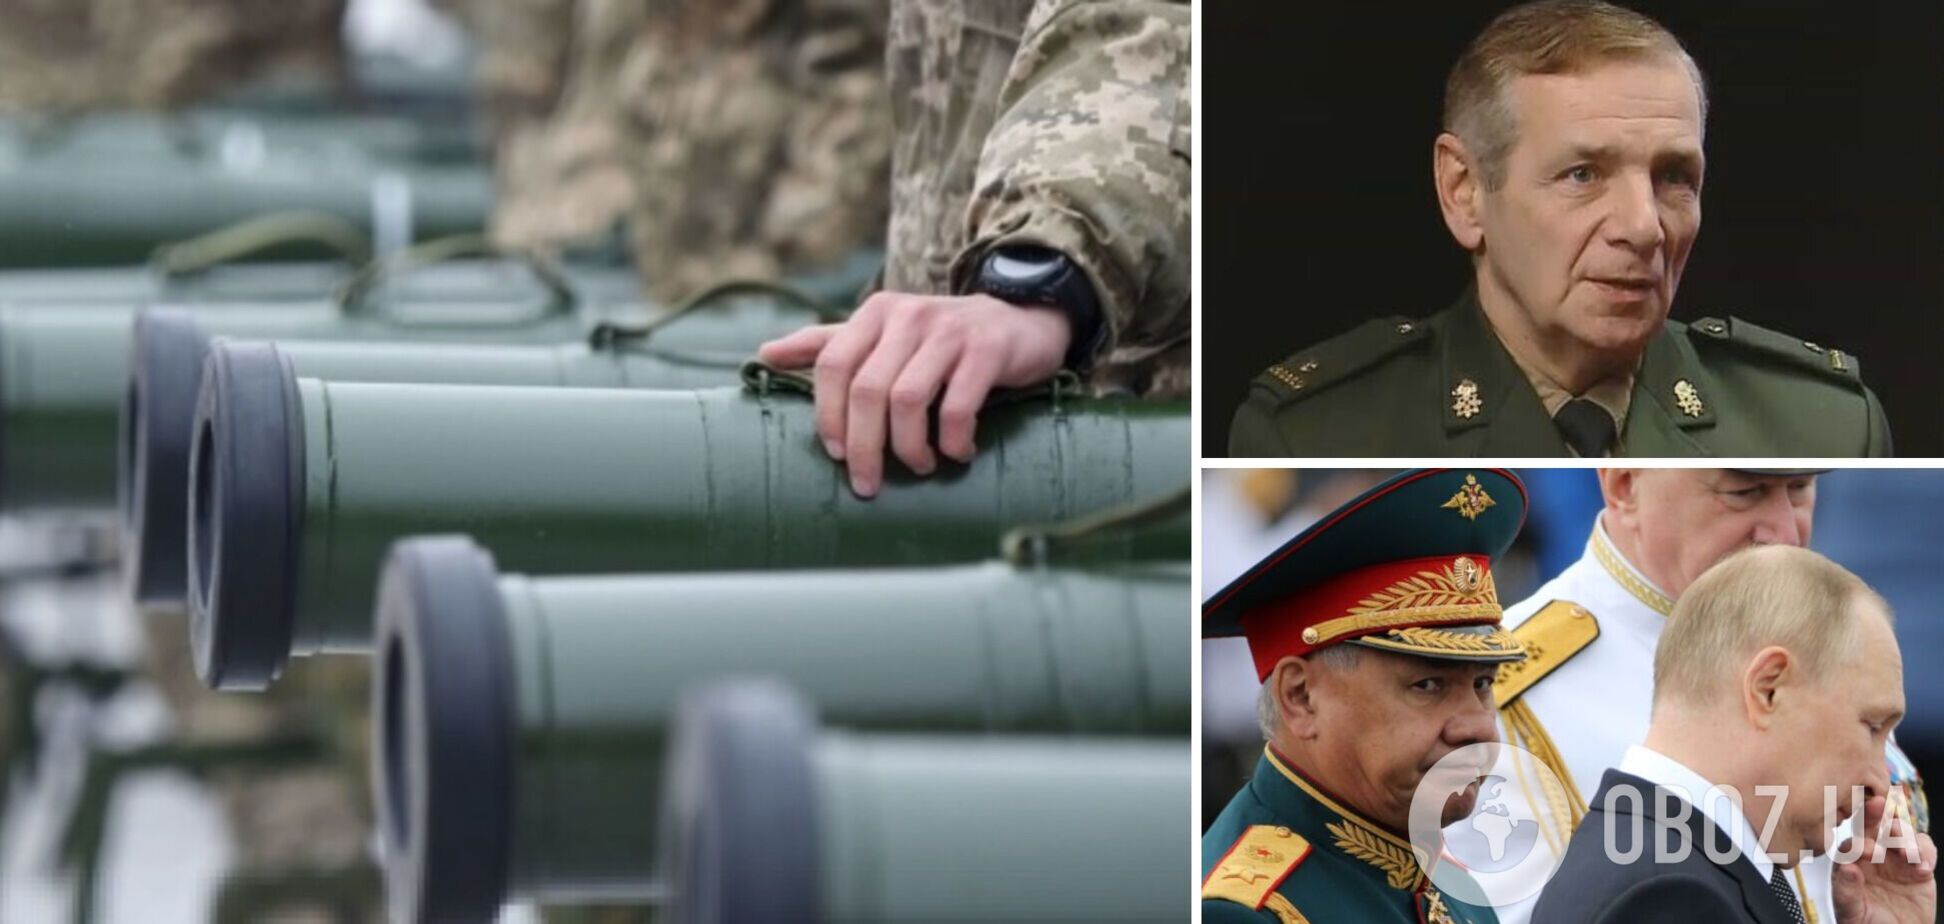 Україна може перемогти цього року, застосування ядерної зброї коштуватиме Путіну життя. Інтерв’ю з майором Гетьманом